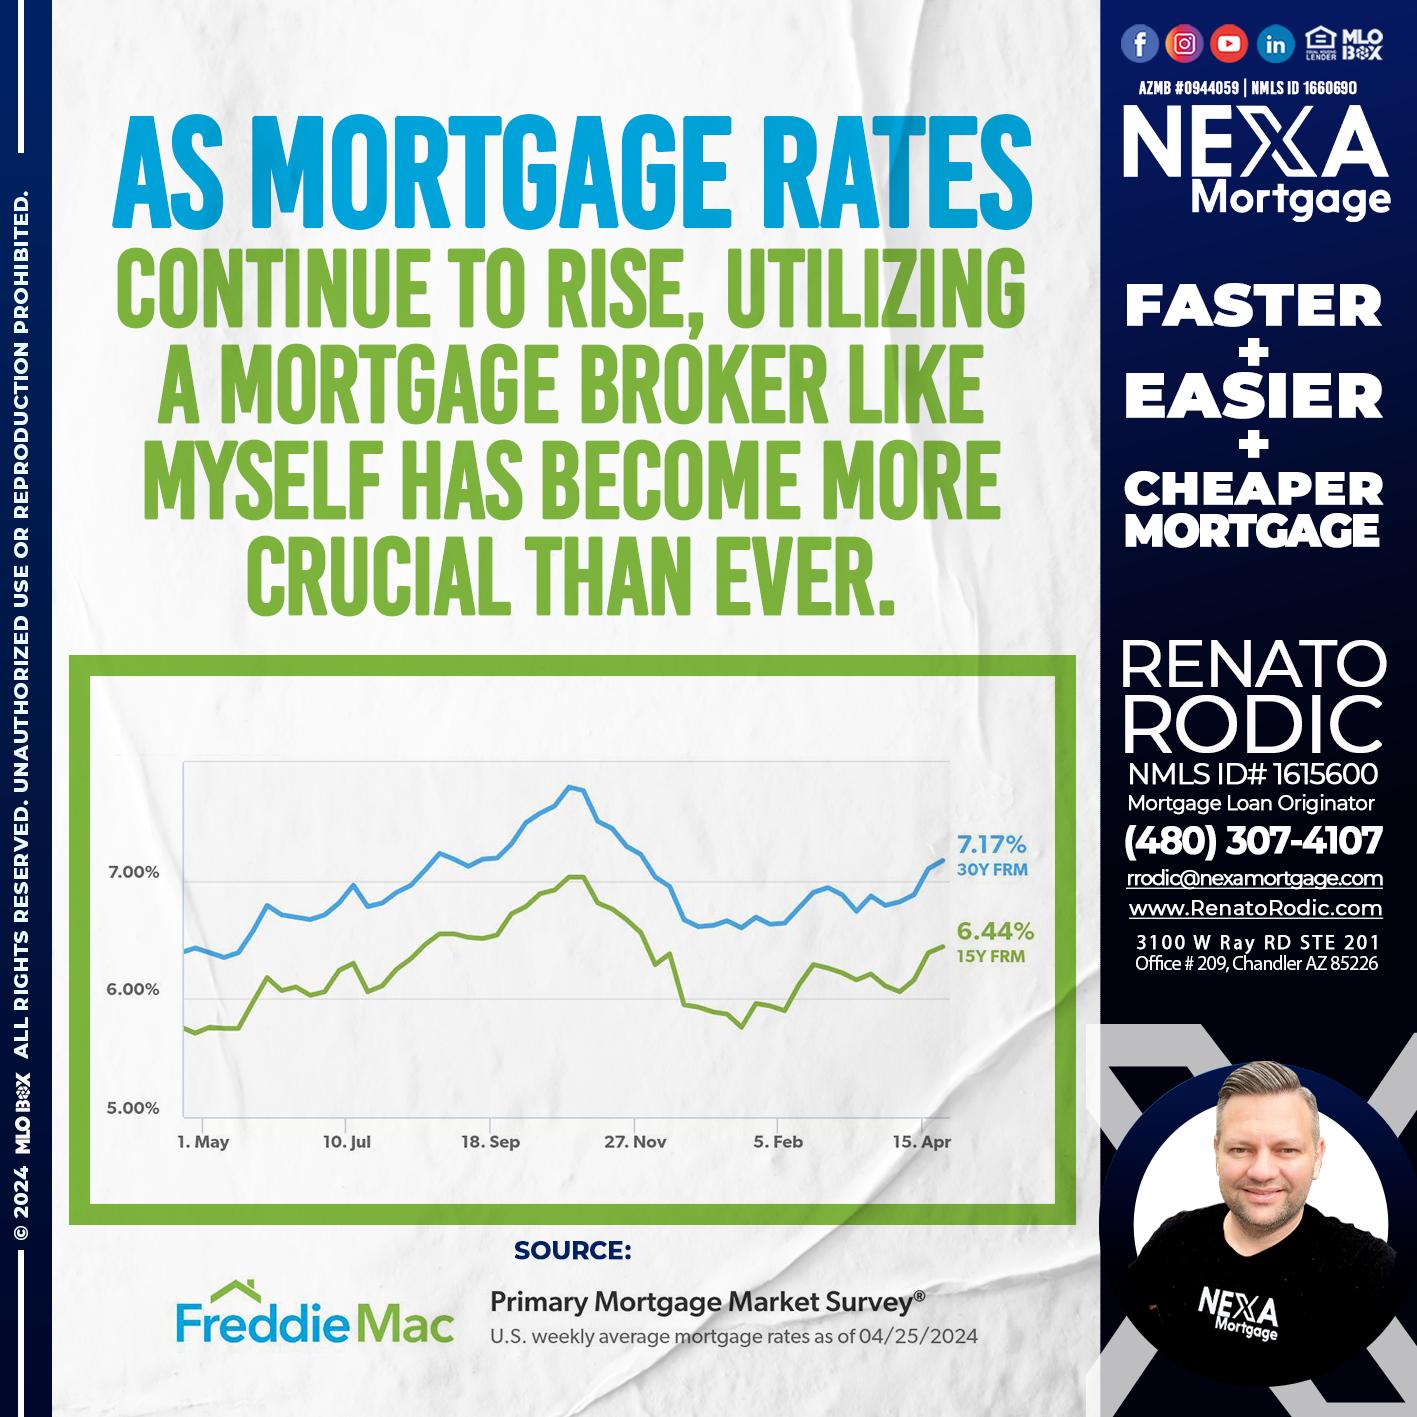 mortgage rates - Renato Rodic -Mortgage Loan Originator